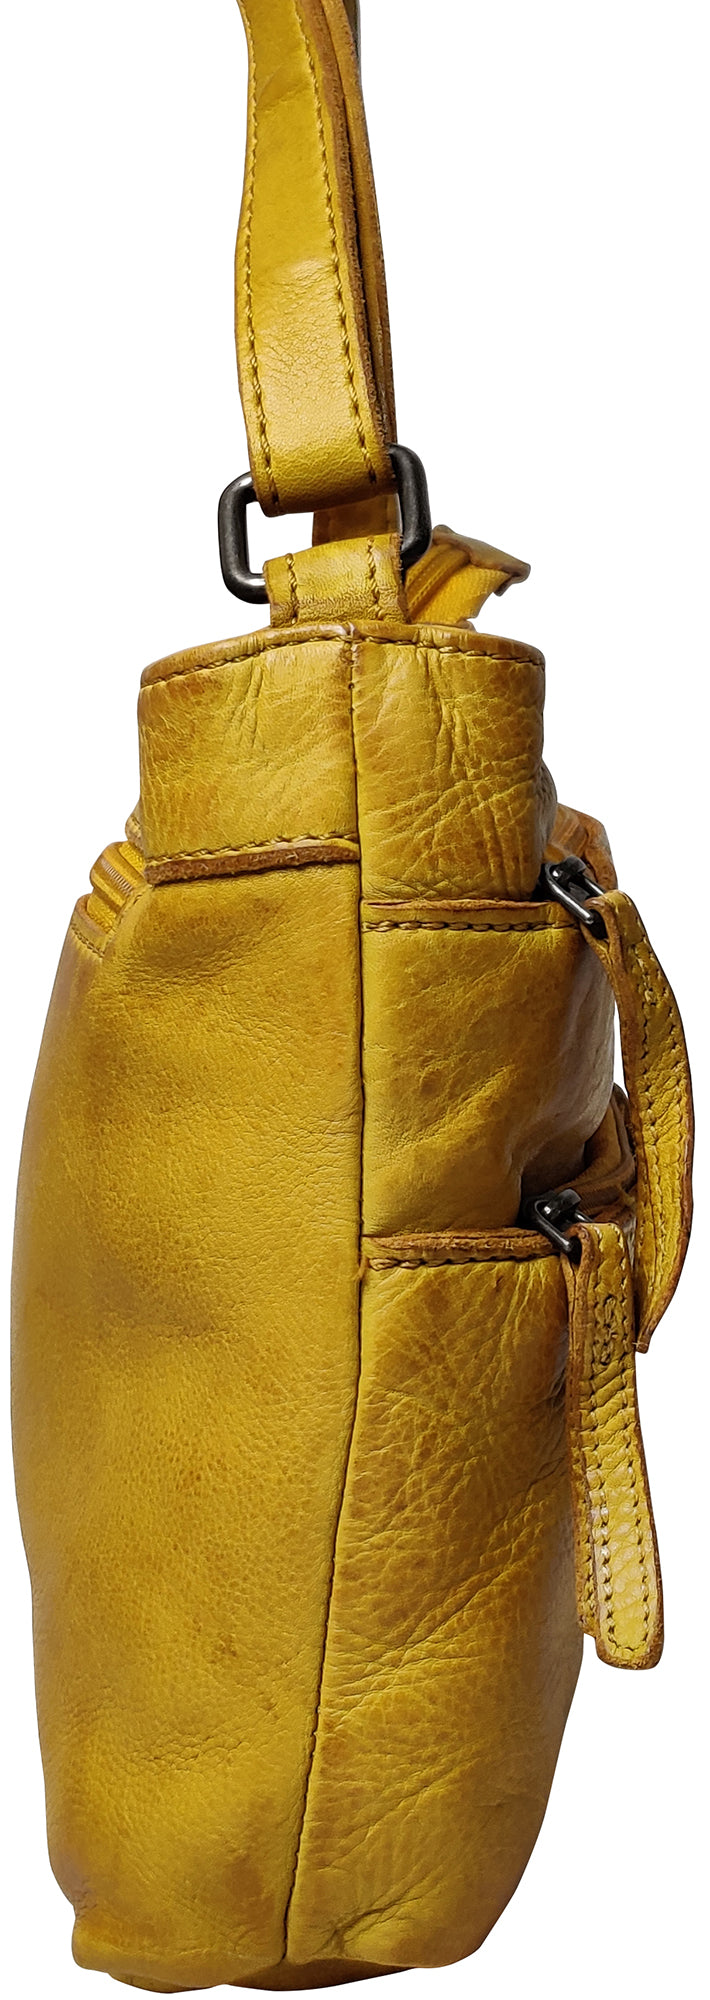 Leather Crossbody Bag for Women, Ocher